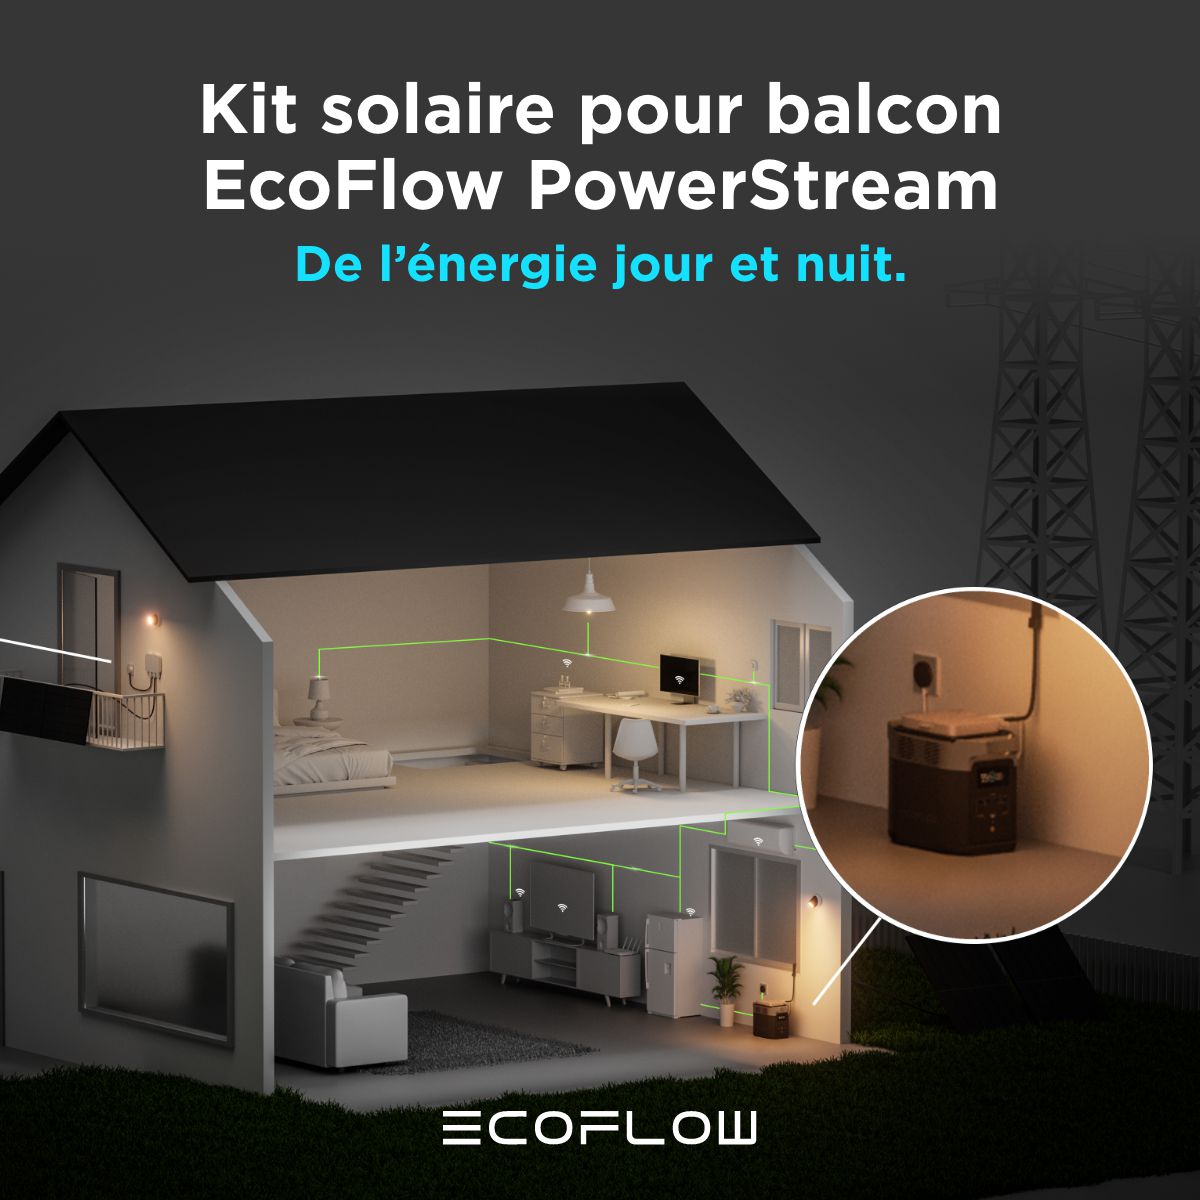 PowerStream Ecoflow fonctionne la nuit